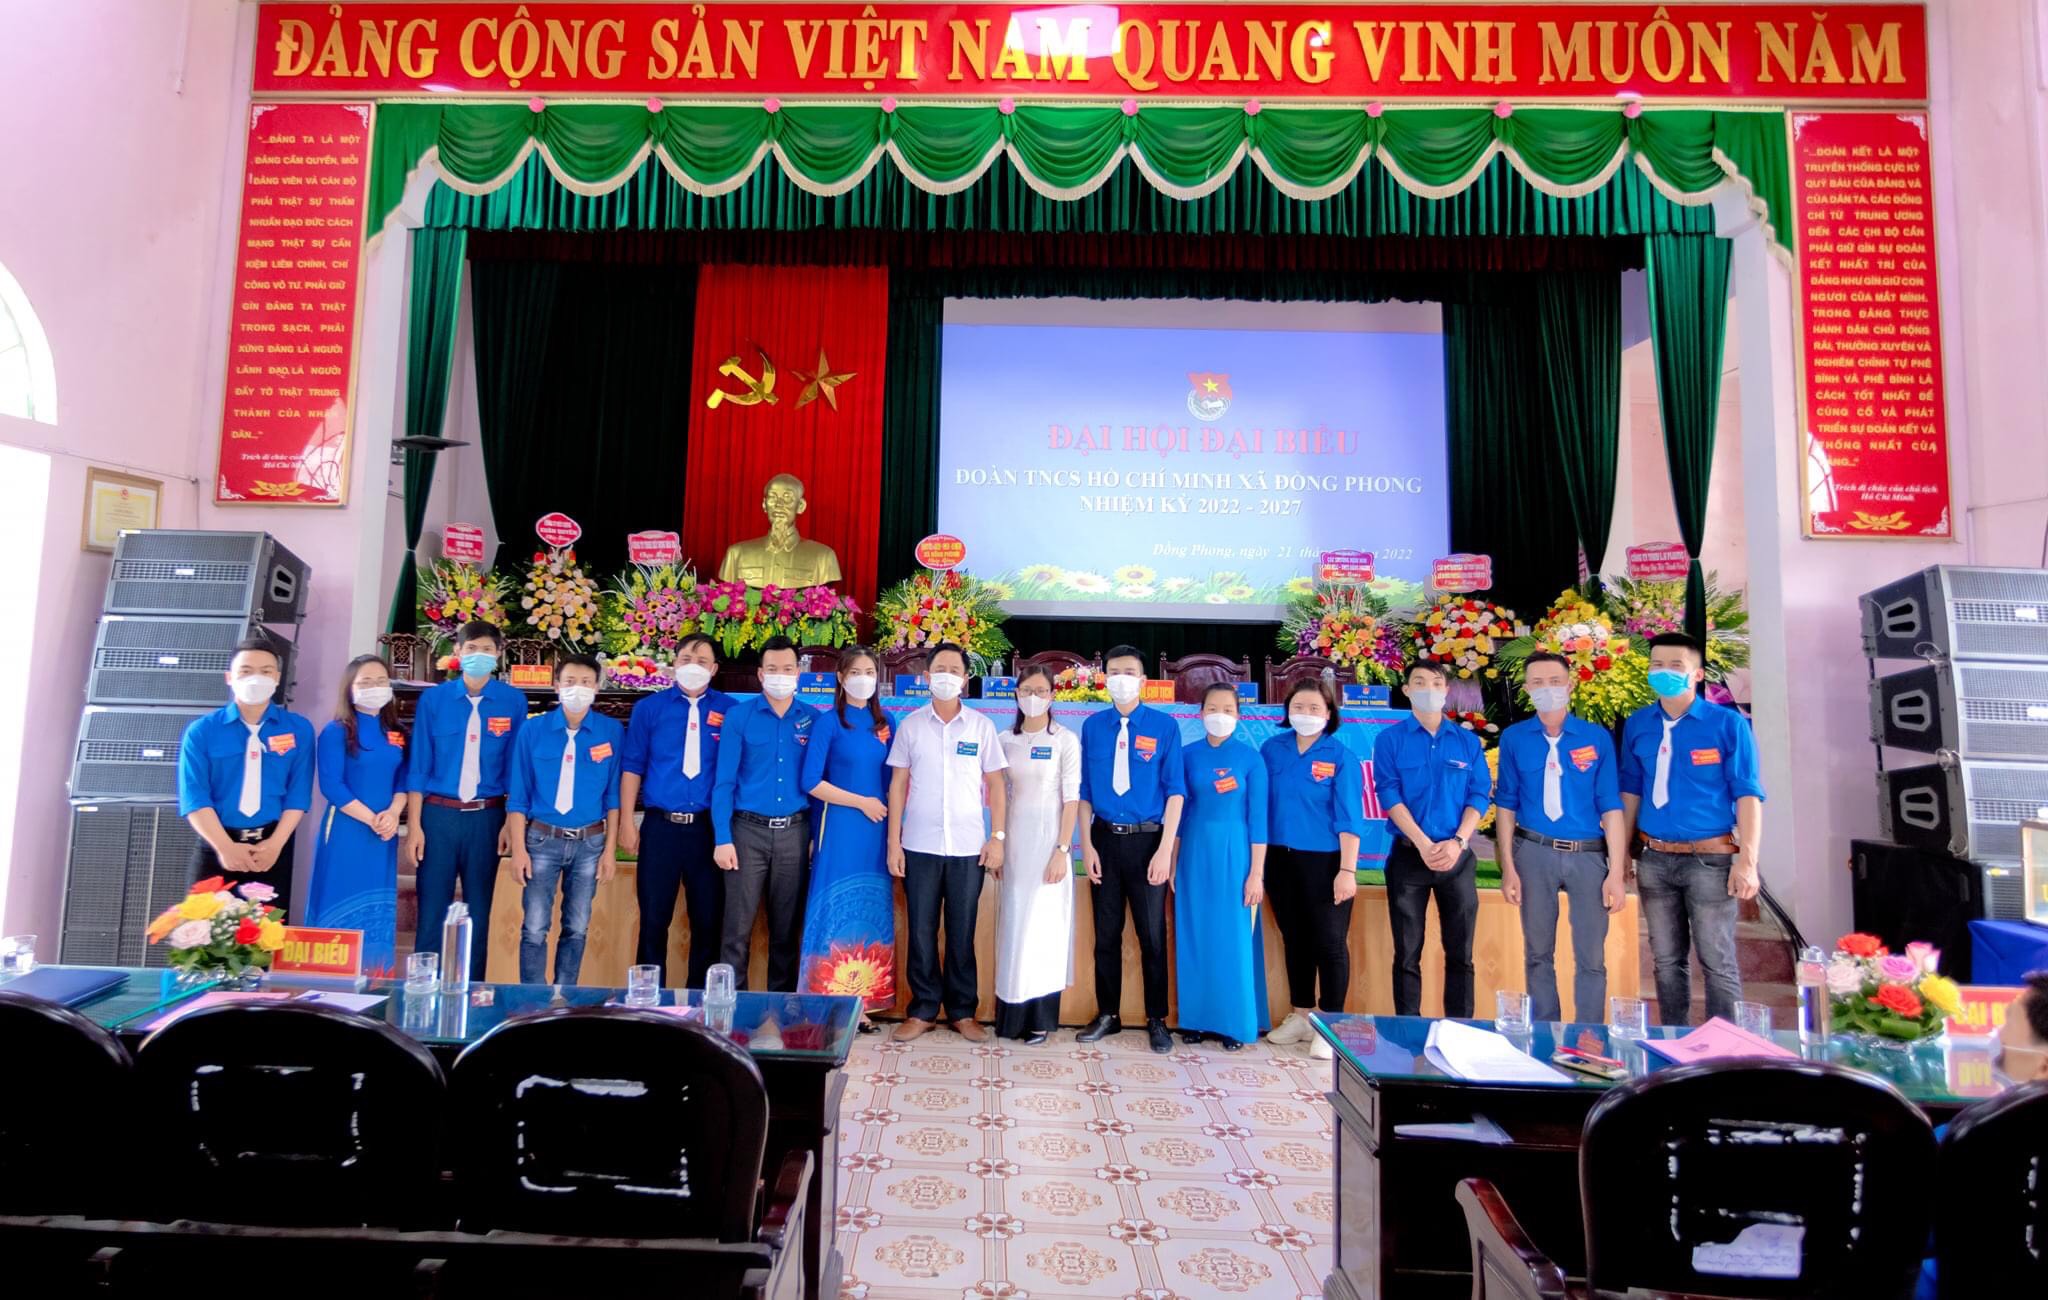 Đại hội Đại biểu Đoàn Thanh niên Cộng sản Hồ Chí Minh xã Đồng Phong, nhiệm kỳ 2022 - 2027